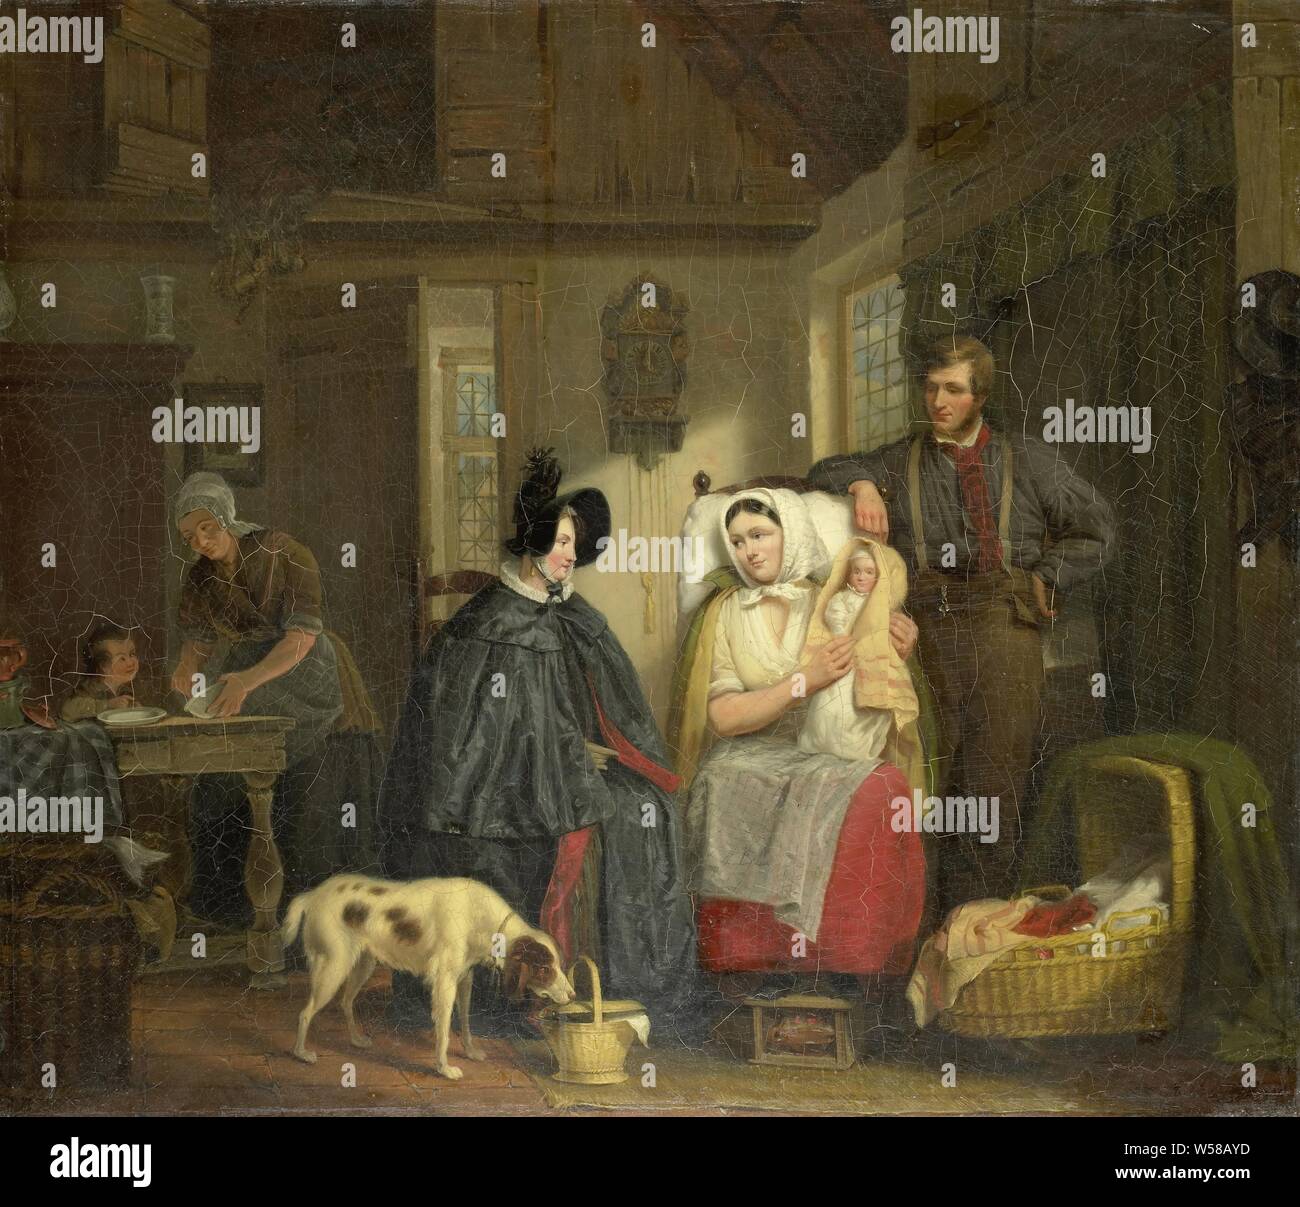 Visite d'une nouvelle mère, intérieur avec une femme visite d'une jeune mère. La sage-femme est assise sur une chaise avec l'enfant sur son bras, à côté de la présidence est le père. Sur le plancher d'un berceau, ragoût et un chien que curieux sur un panier. En arrière à gauche une fille prépare la nourriture pour un enfant. Un président réveil sur le mur., Moritz Calisch, 1835, toile, de la peinture à l'huile (peinture), h 56,7 cm × 66,3 cm × w t 3 cm d 11,2 cm Banque D'Images